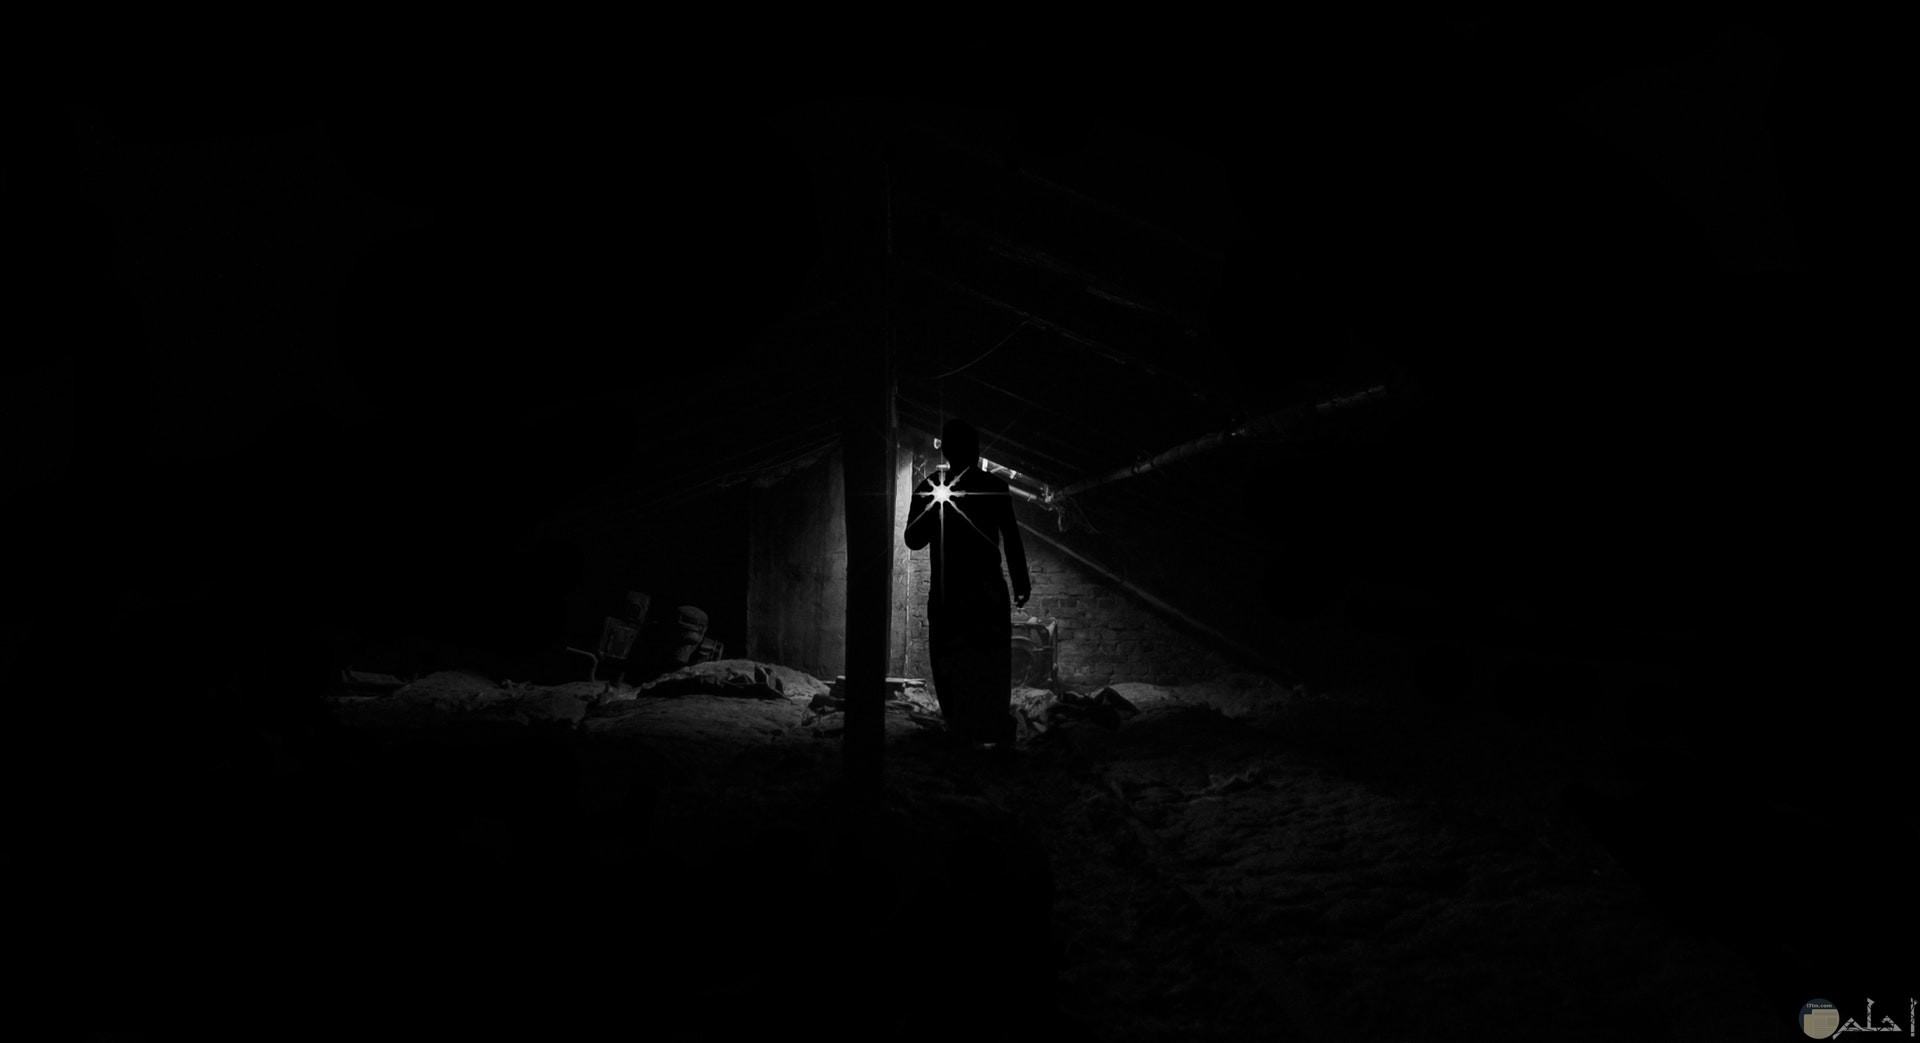 صورة رعب لشخص في مكان مخيف ومظلم ممسك بكشاف للإضاءة فقط